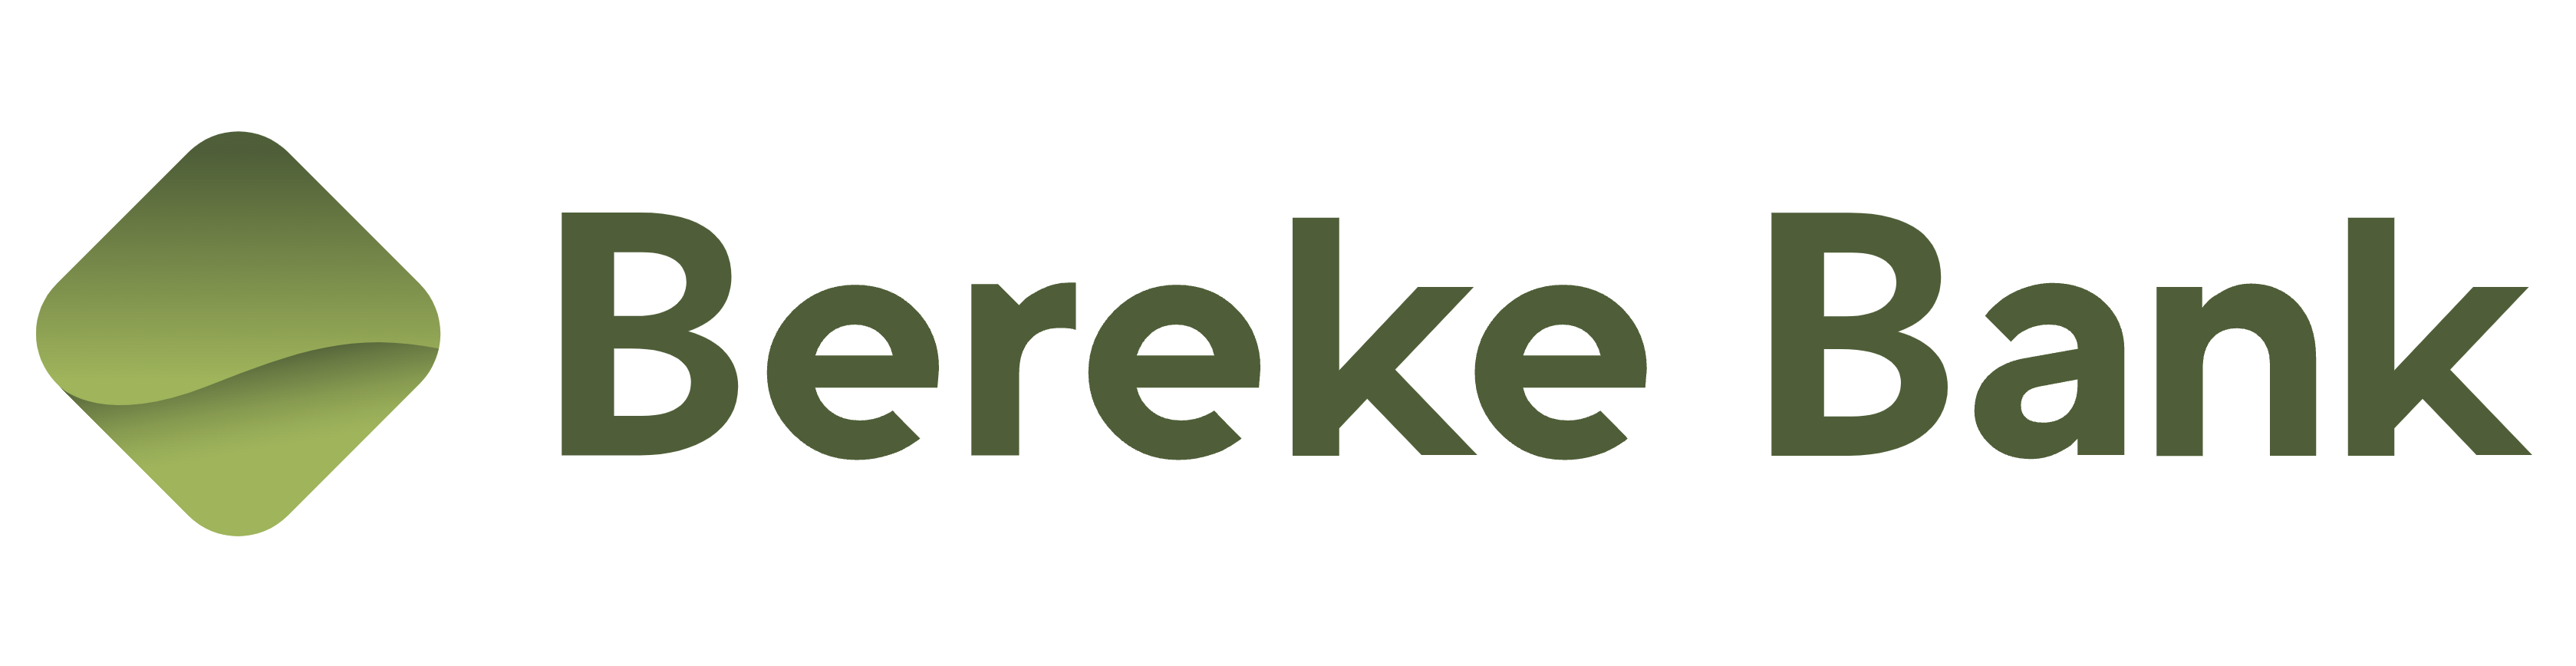 Bereke bank Автокредит с комиссиями